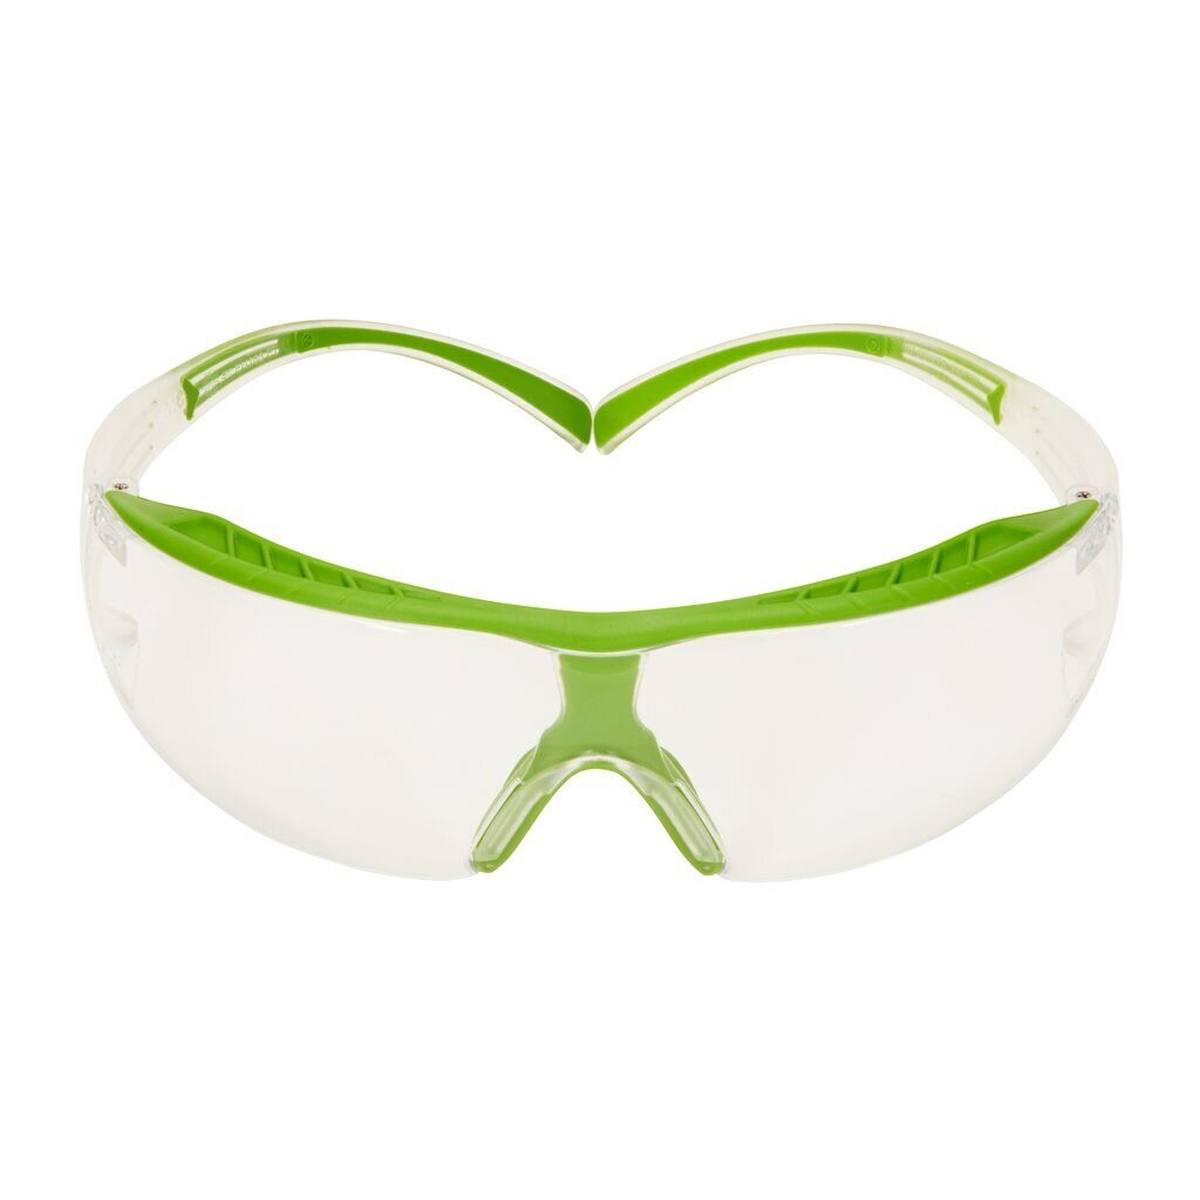 3M SecureFit 400X lunettes de protection, monture vert transparent, revêtement anti-buée Scotchgard (K/N), écran incolore, SF401XSGAF-GRN